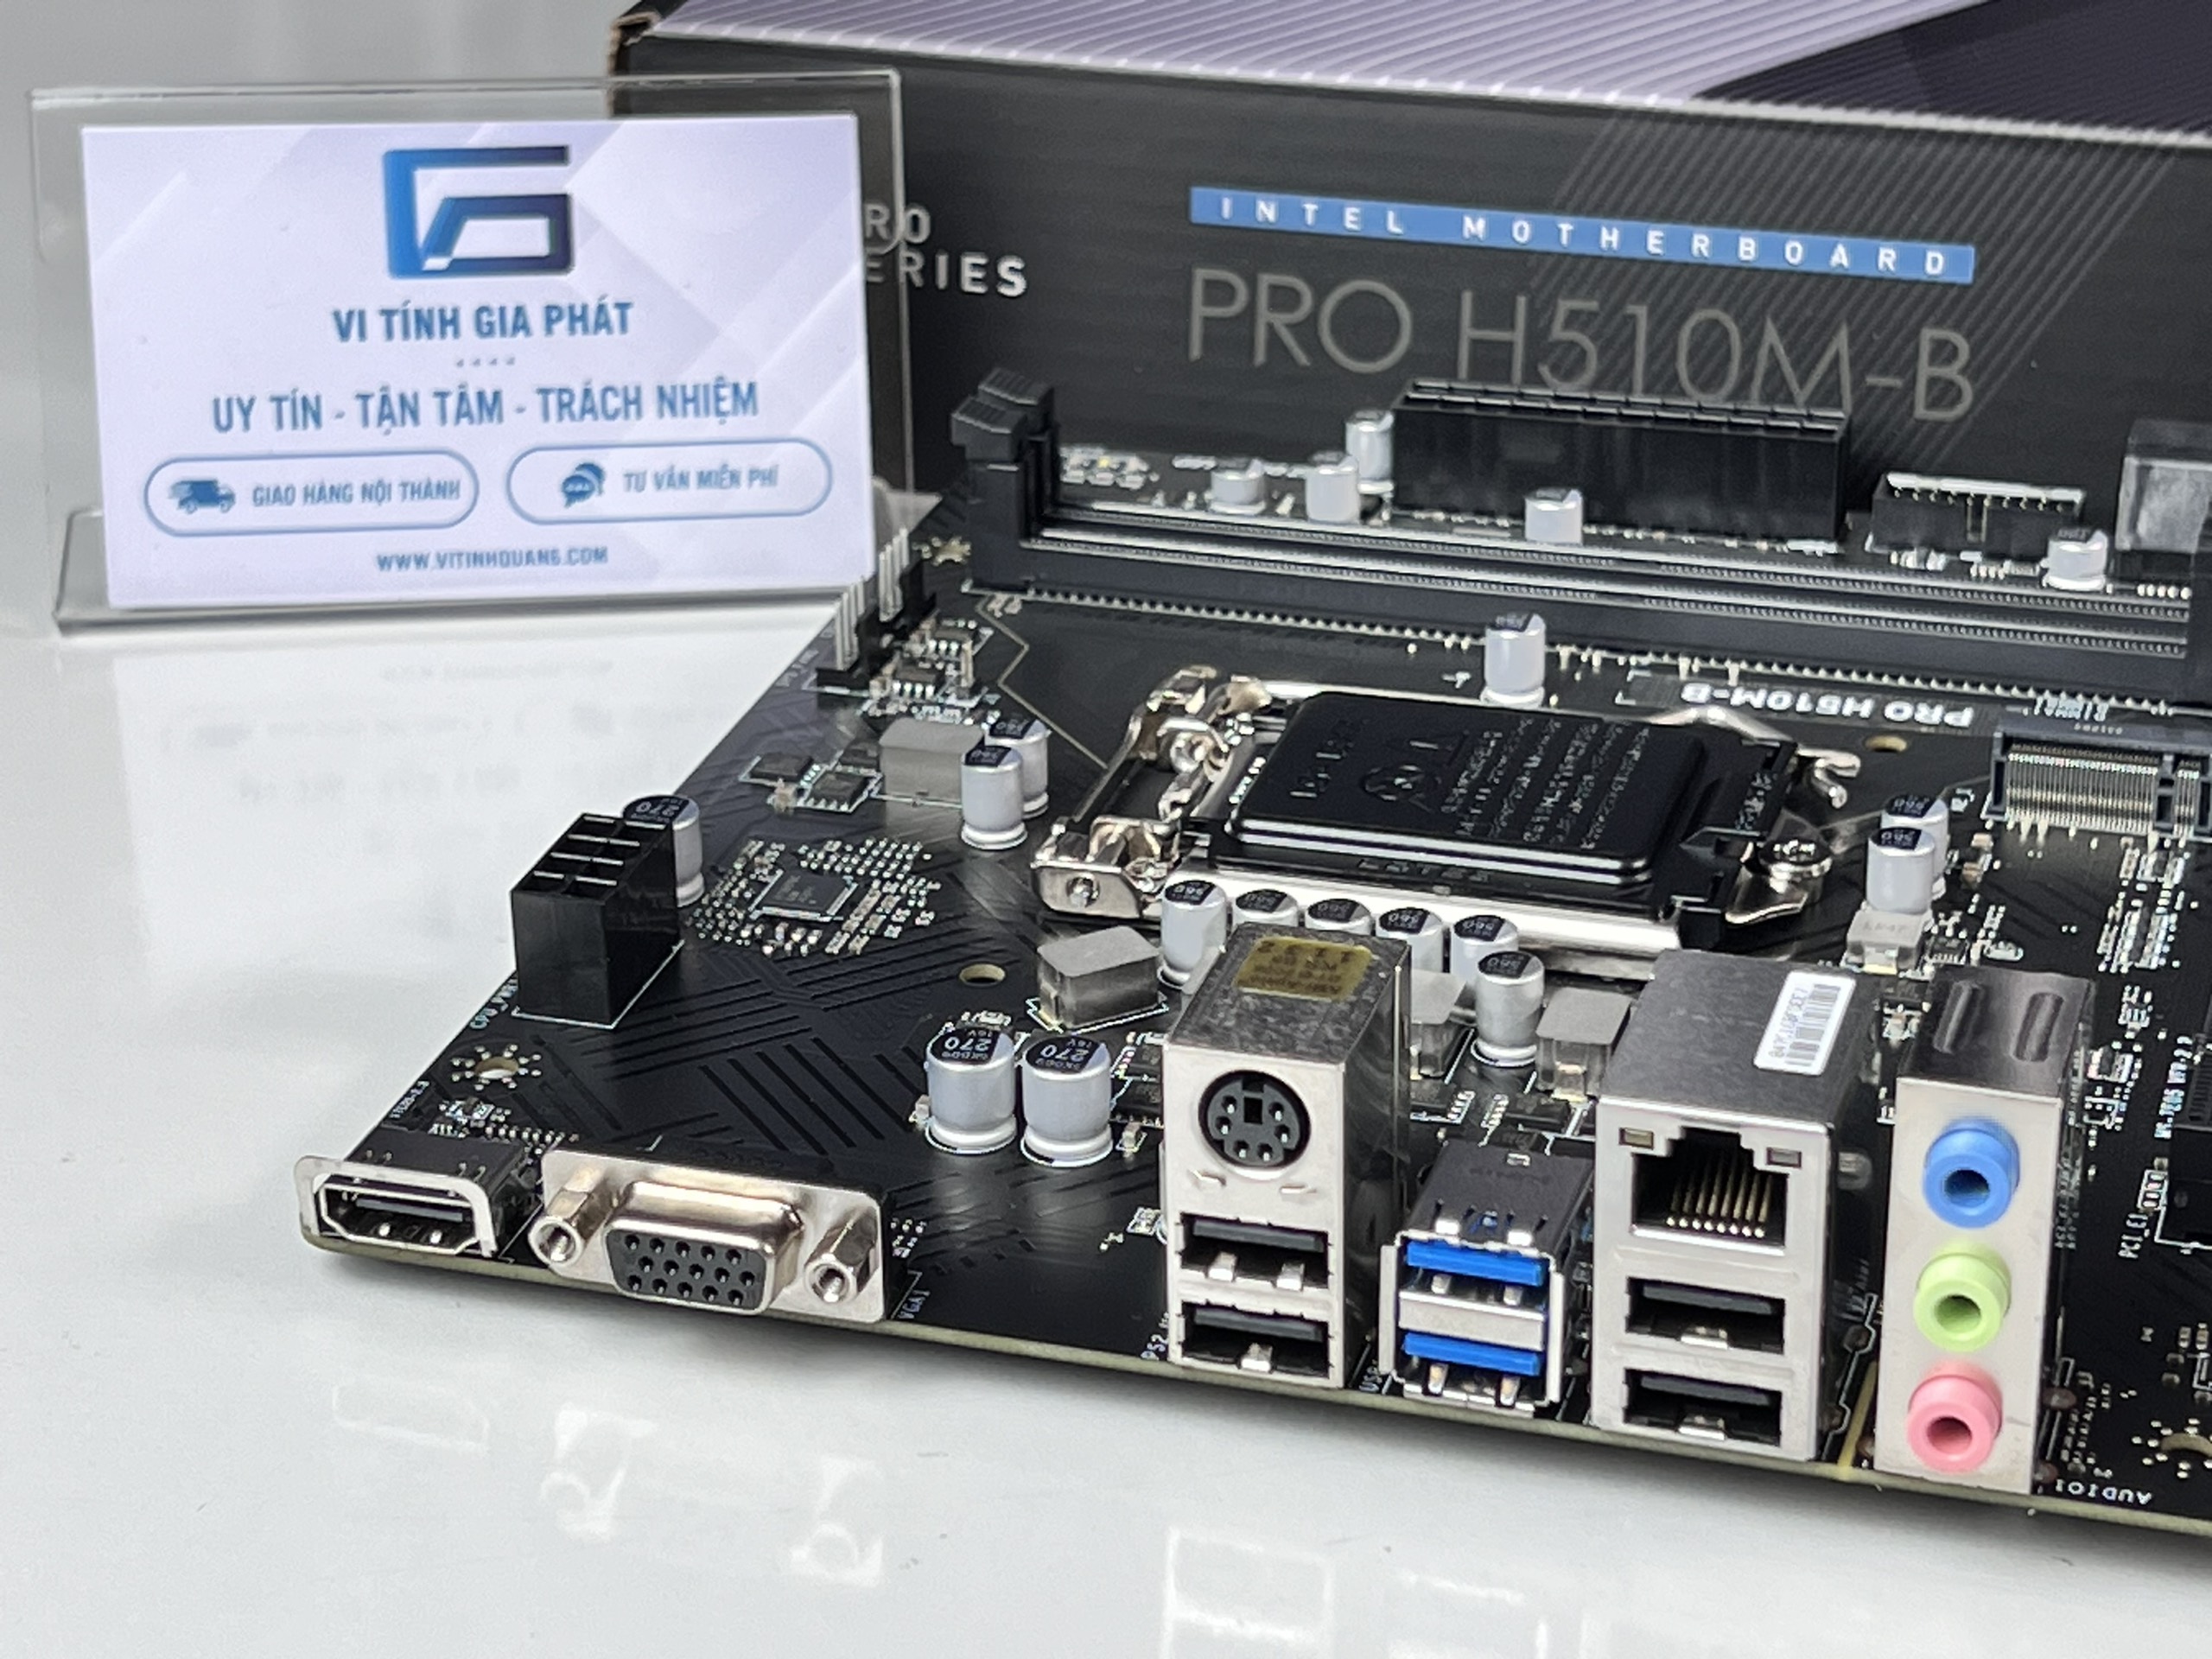 MAINBOARD MSI H510M-B (VGA, HDMI, LGA1200) - Hàng chính hãng